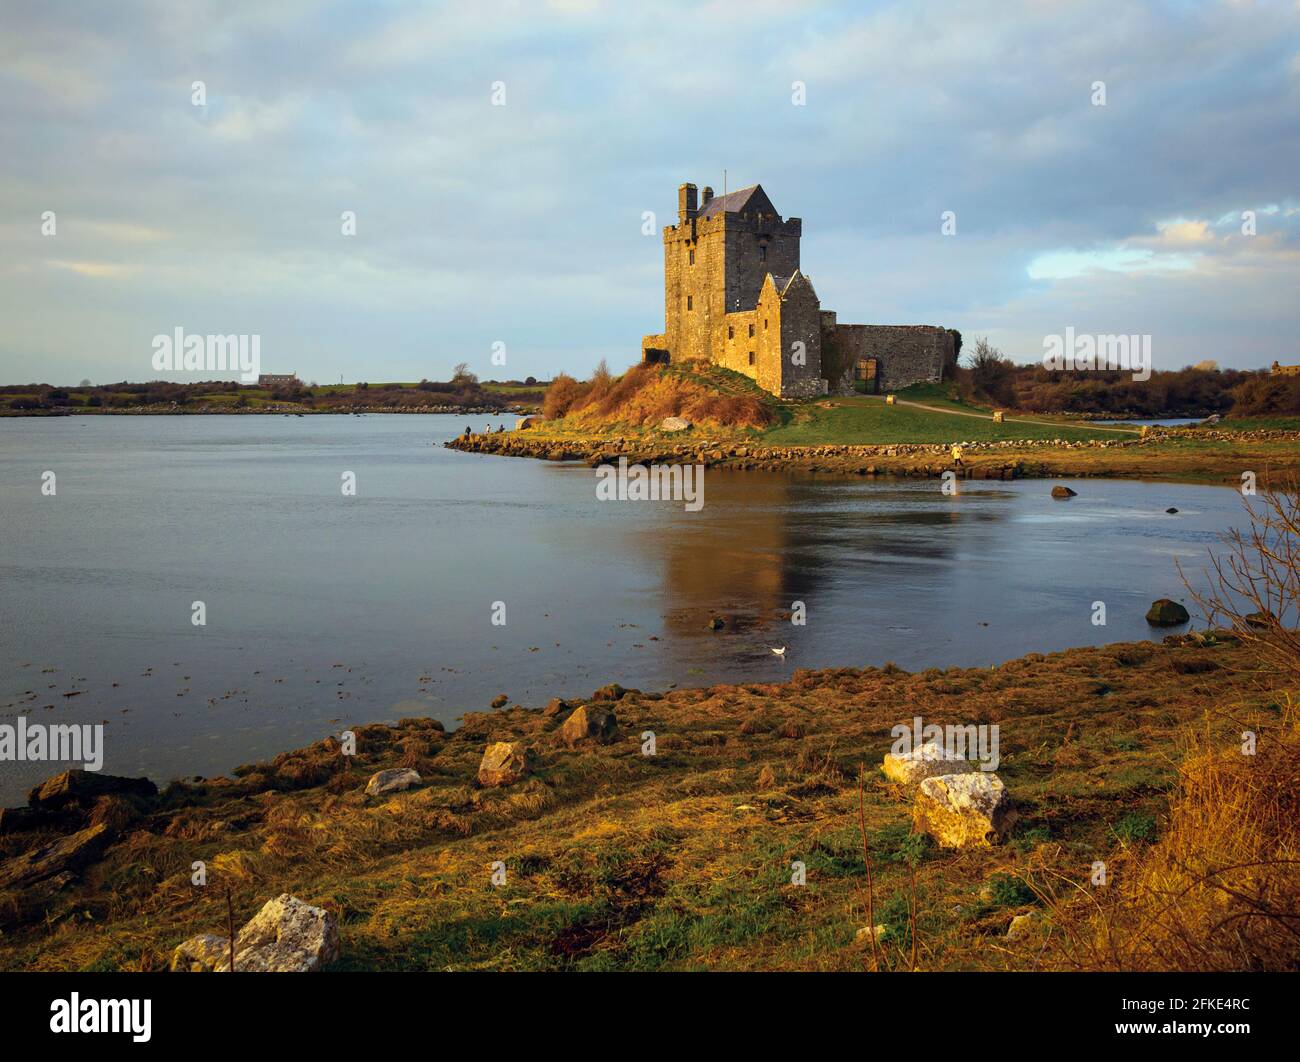 Dunguaire Castle in Kinvara, County Galway, Republik Irland. Irland. Diese Art von Struktur wird als Turmhaus bezeichnet. Turmhäuser wurden für bot entwickelt Stockfoto